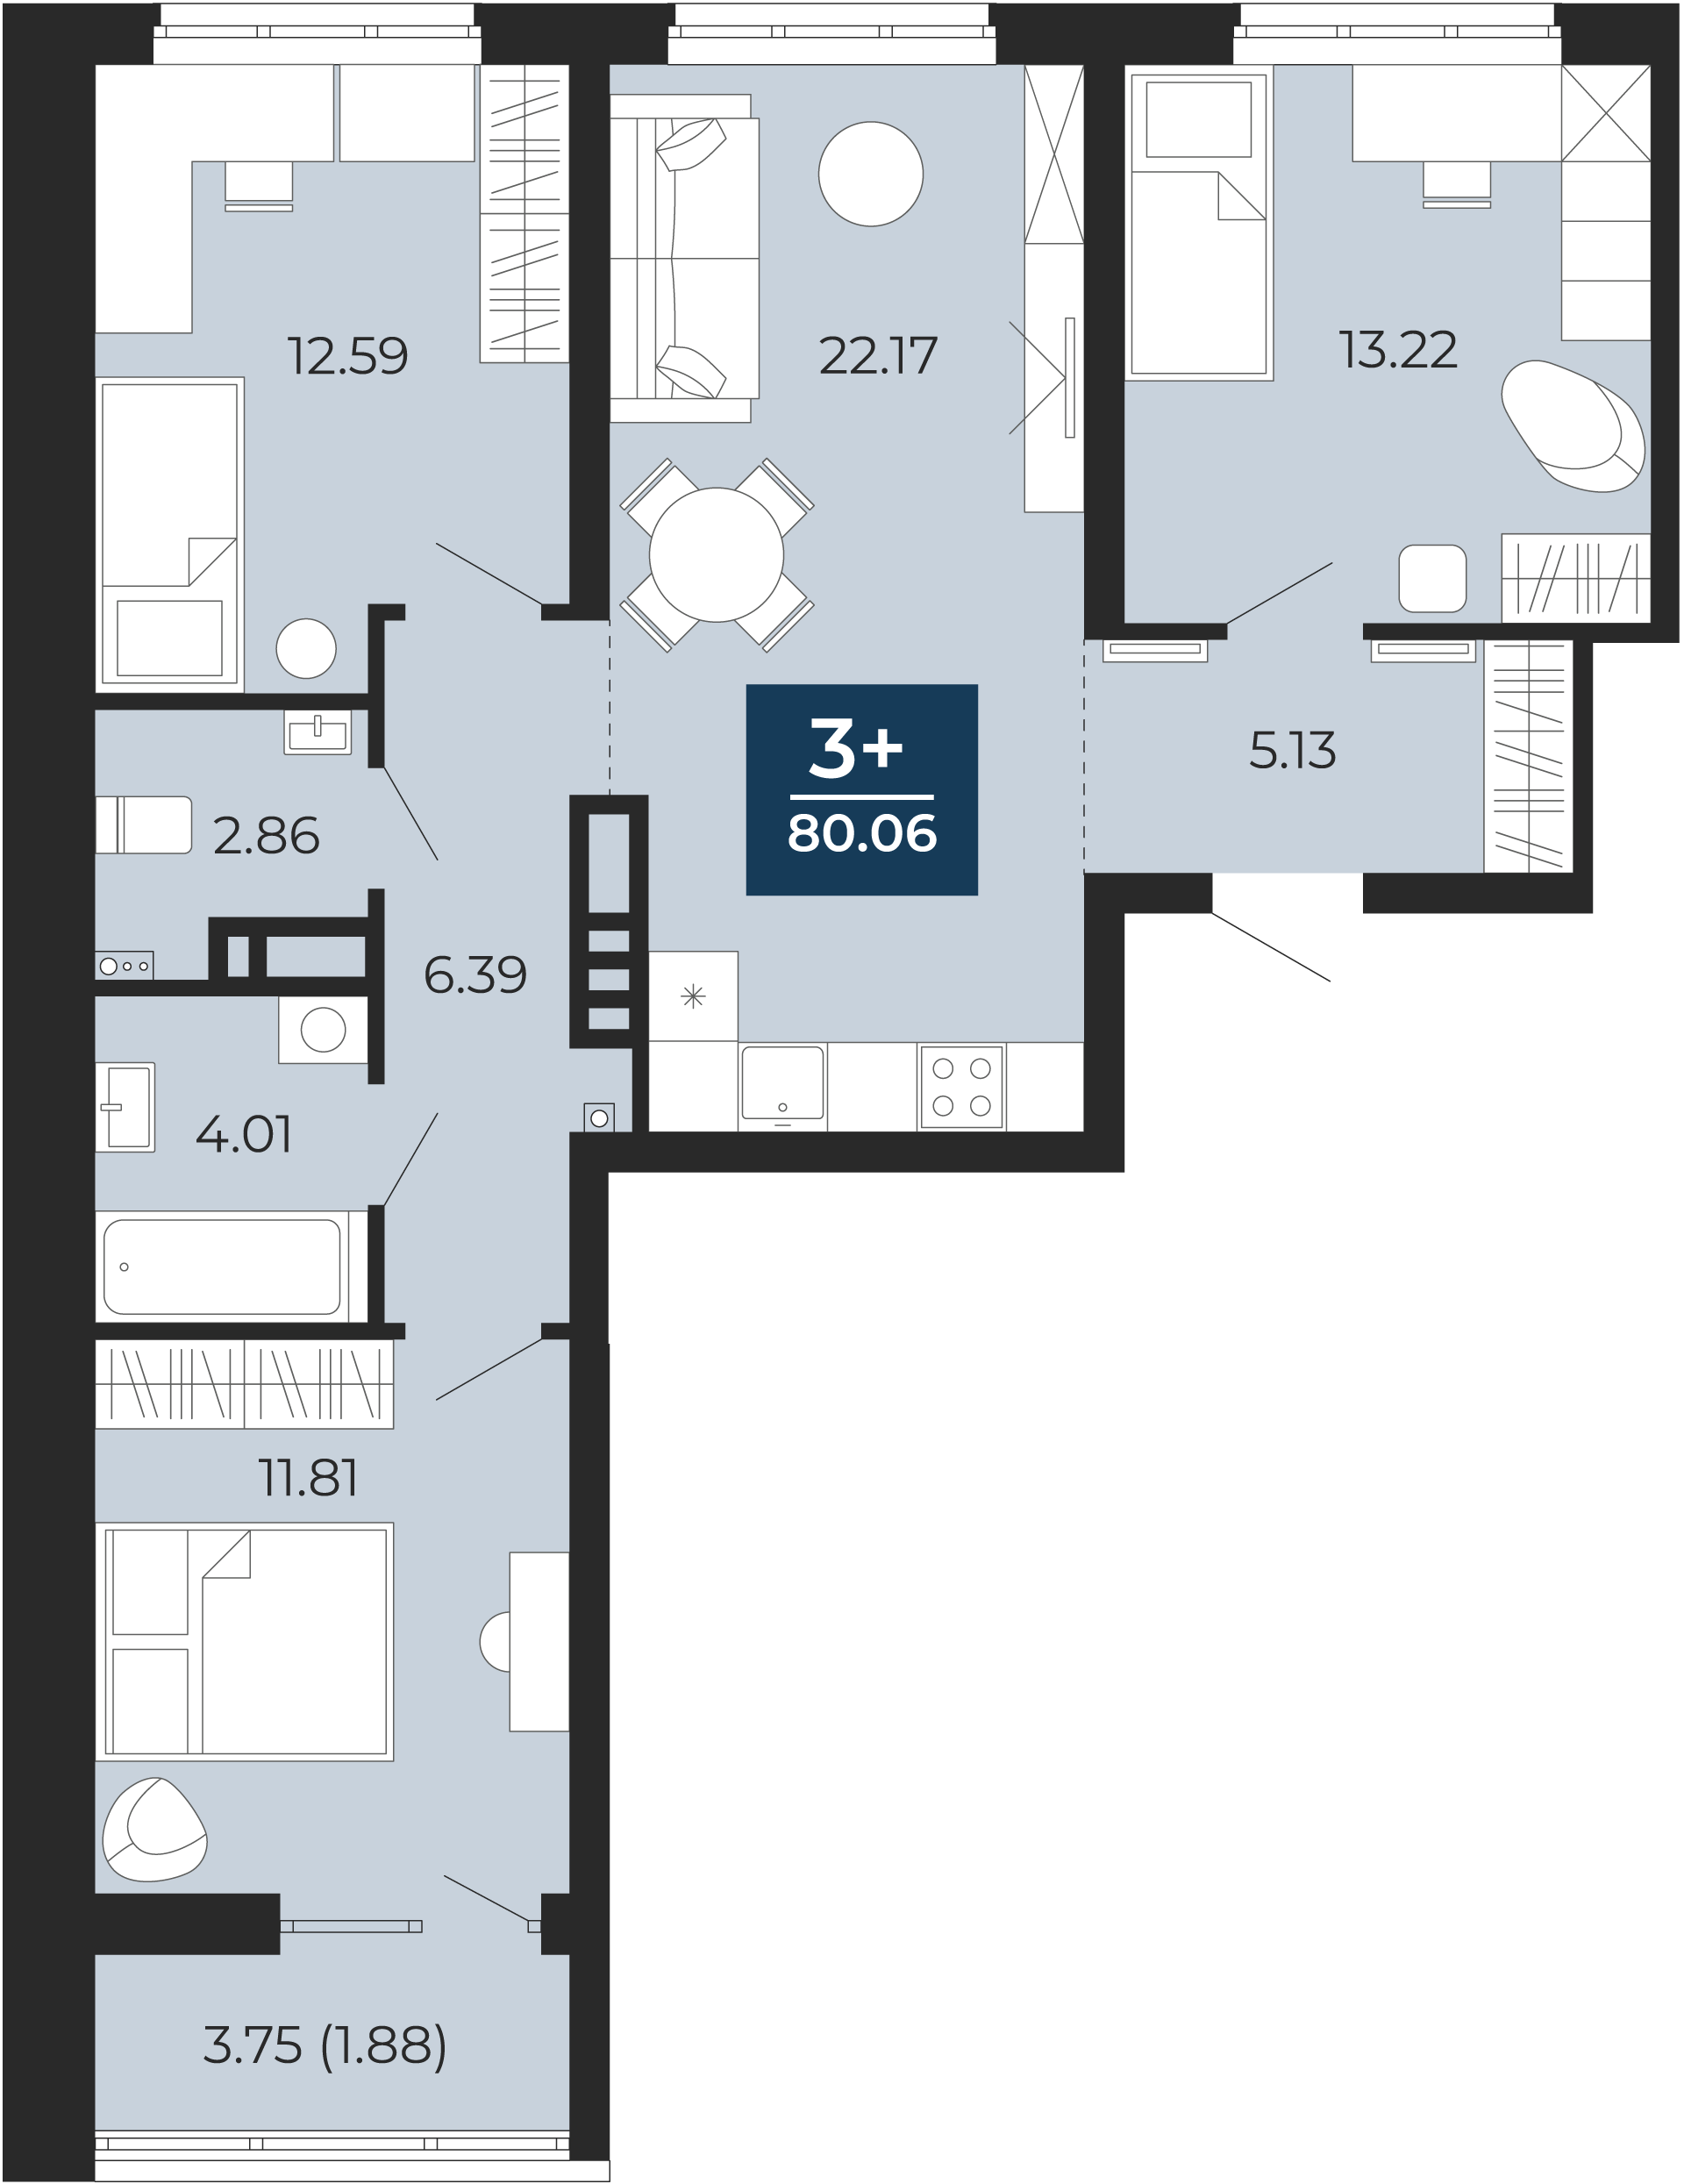 Квартира № 247, 3-комнатная, 80.06 кв. м, 13 этаж